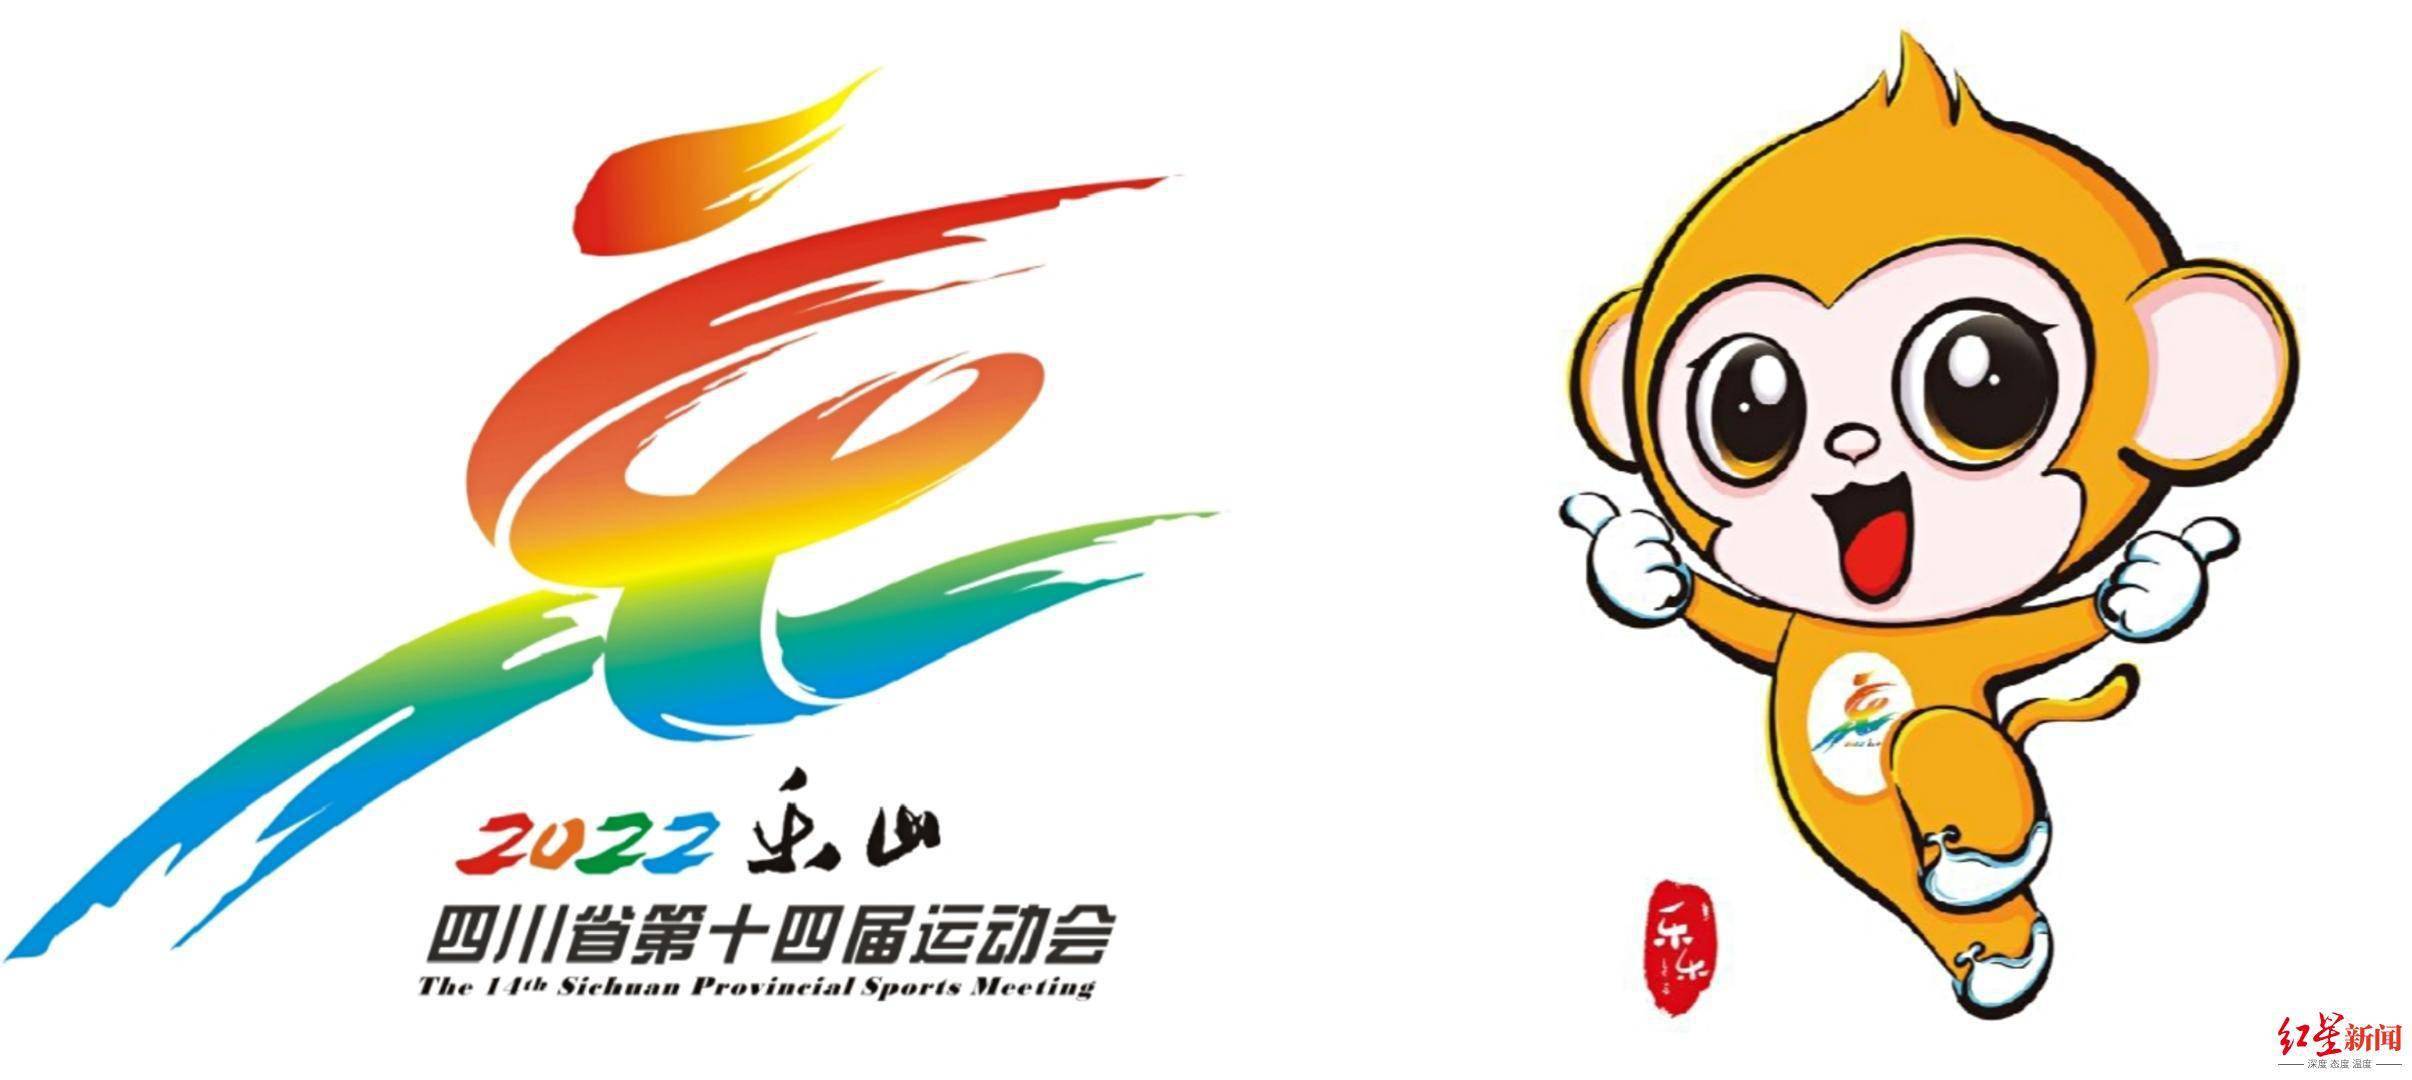 运动会|四川省第十四届运动会系列标识正式发布 将于今年8月8日在乐山开幕